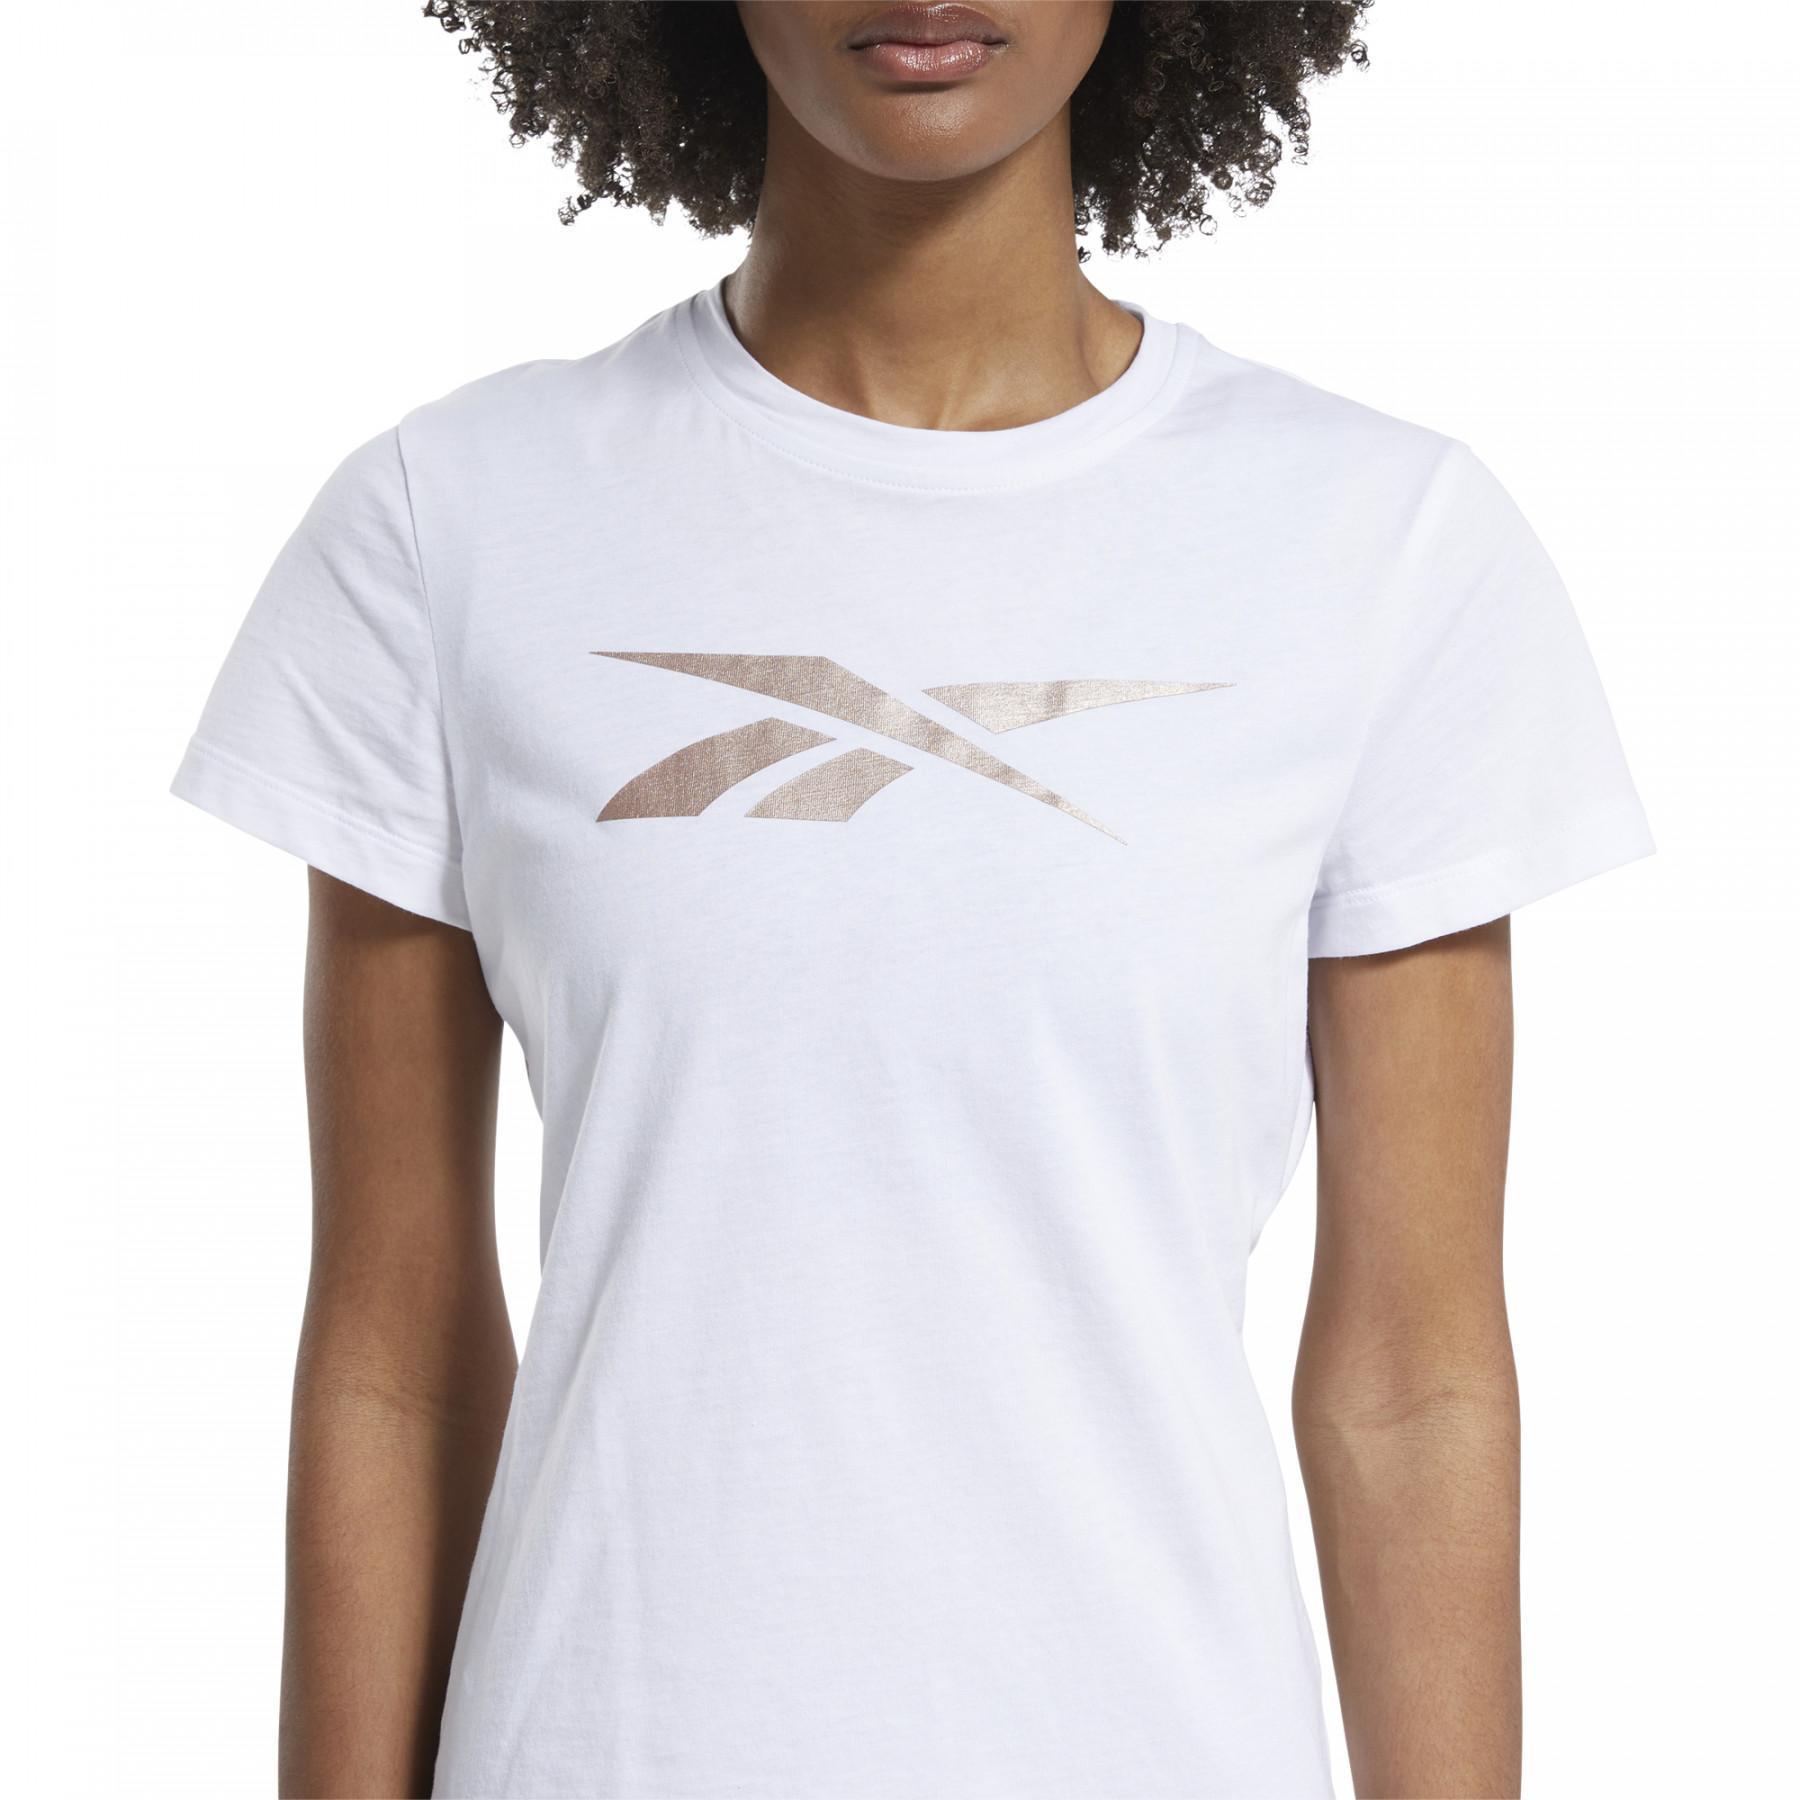 Camiseta feminina Reebok Training Essentials Vector Graphic